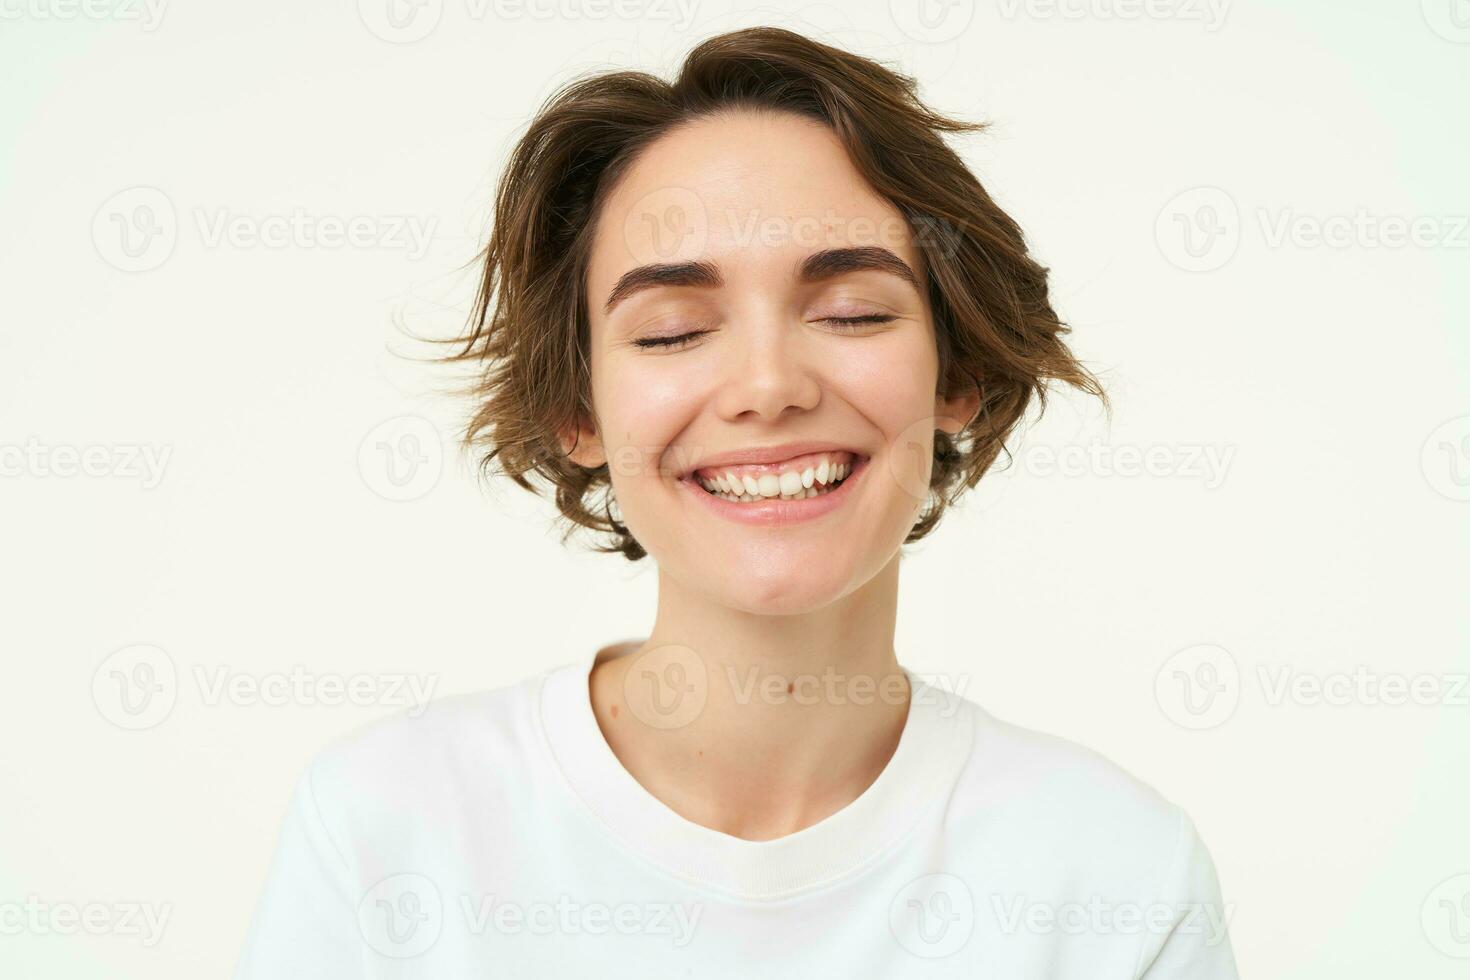 cerca arriba retrato de morena niña con corto Corte de pelo, sonriente y mirando feliz, posando terminado blanco antecedentes foto